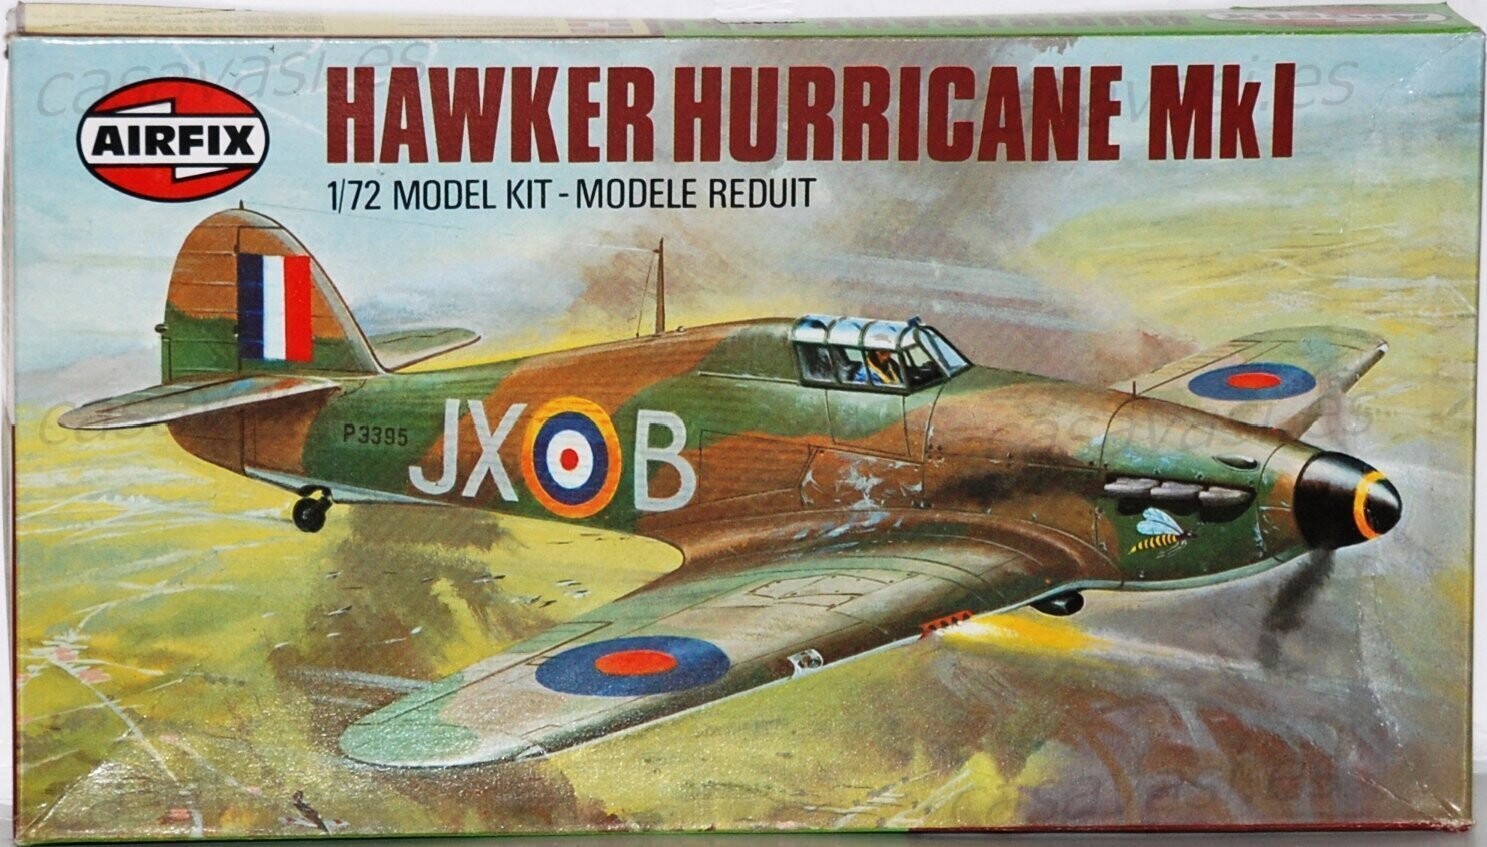 Airfix - 1979 - s2-02067-9 - 1/72 - Hawker Hurricane MK1
Box Size 21 x 11.5 cm.